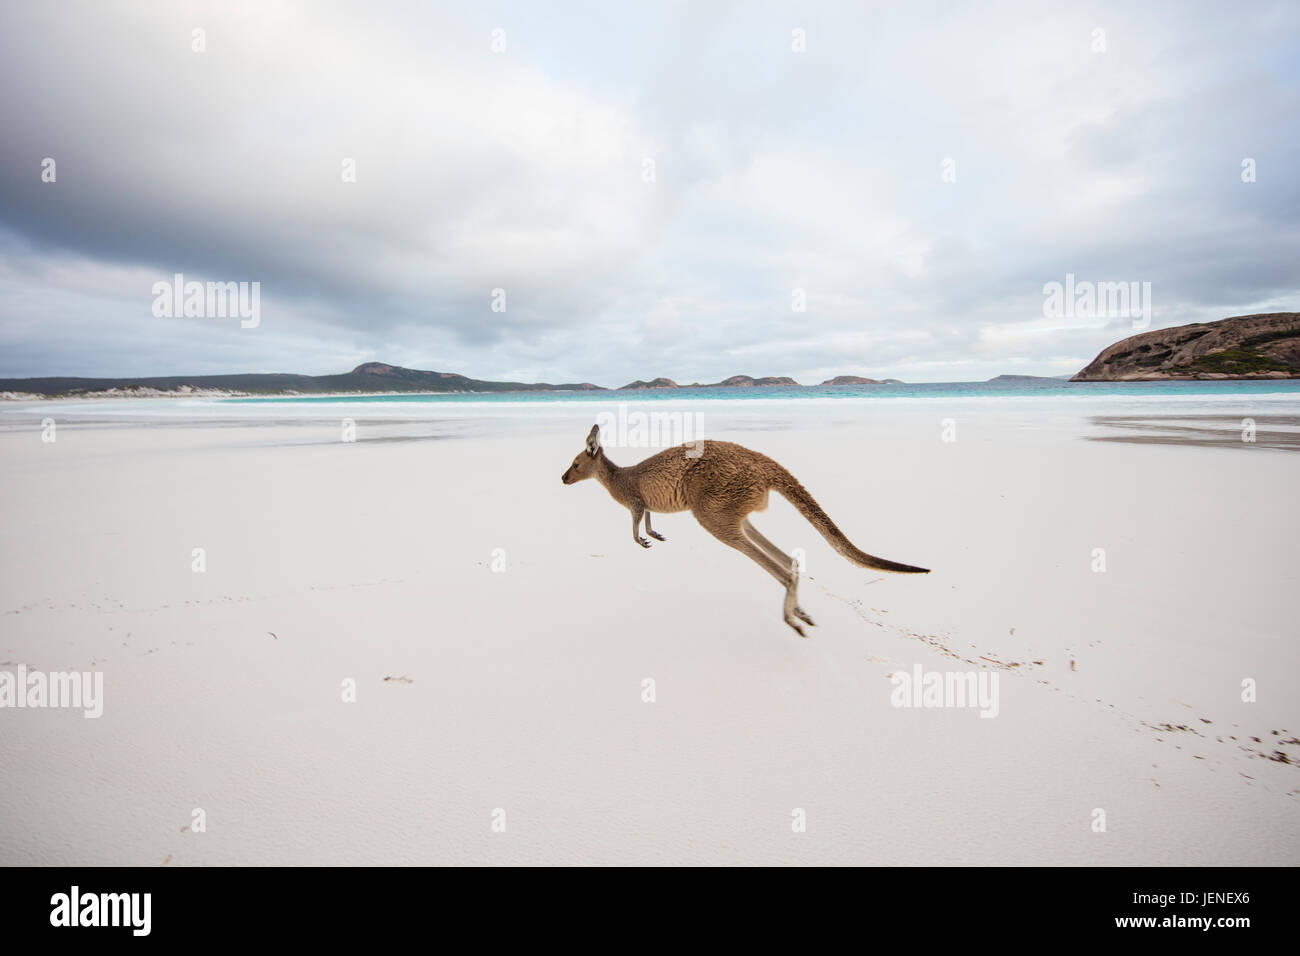 Kangaroo jumping on beach, Lucky Bay, Esperance, Western Australia, Australia Stock Photo